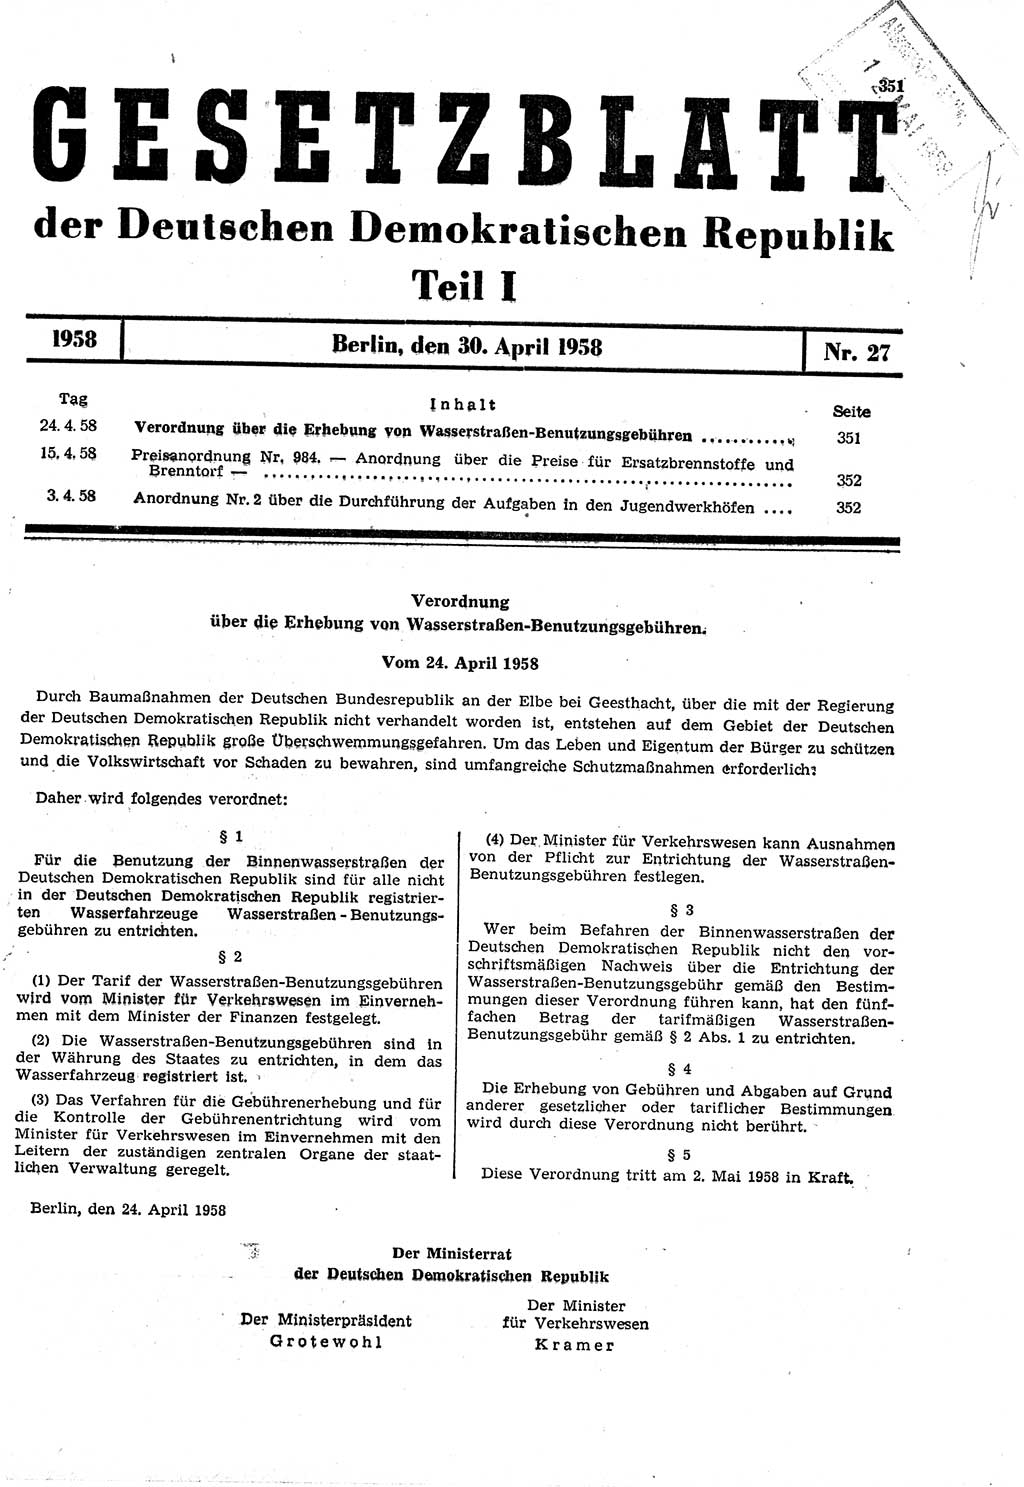 Gesetzblatt (GBl.) der Deutschen Demokratischen Republik (DDR) Teil Ⅰ 1958, Seite 351 (GBl. DDR Ⅰ 1958, S. 351)